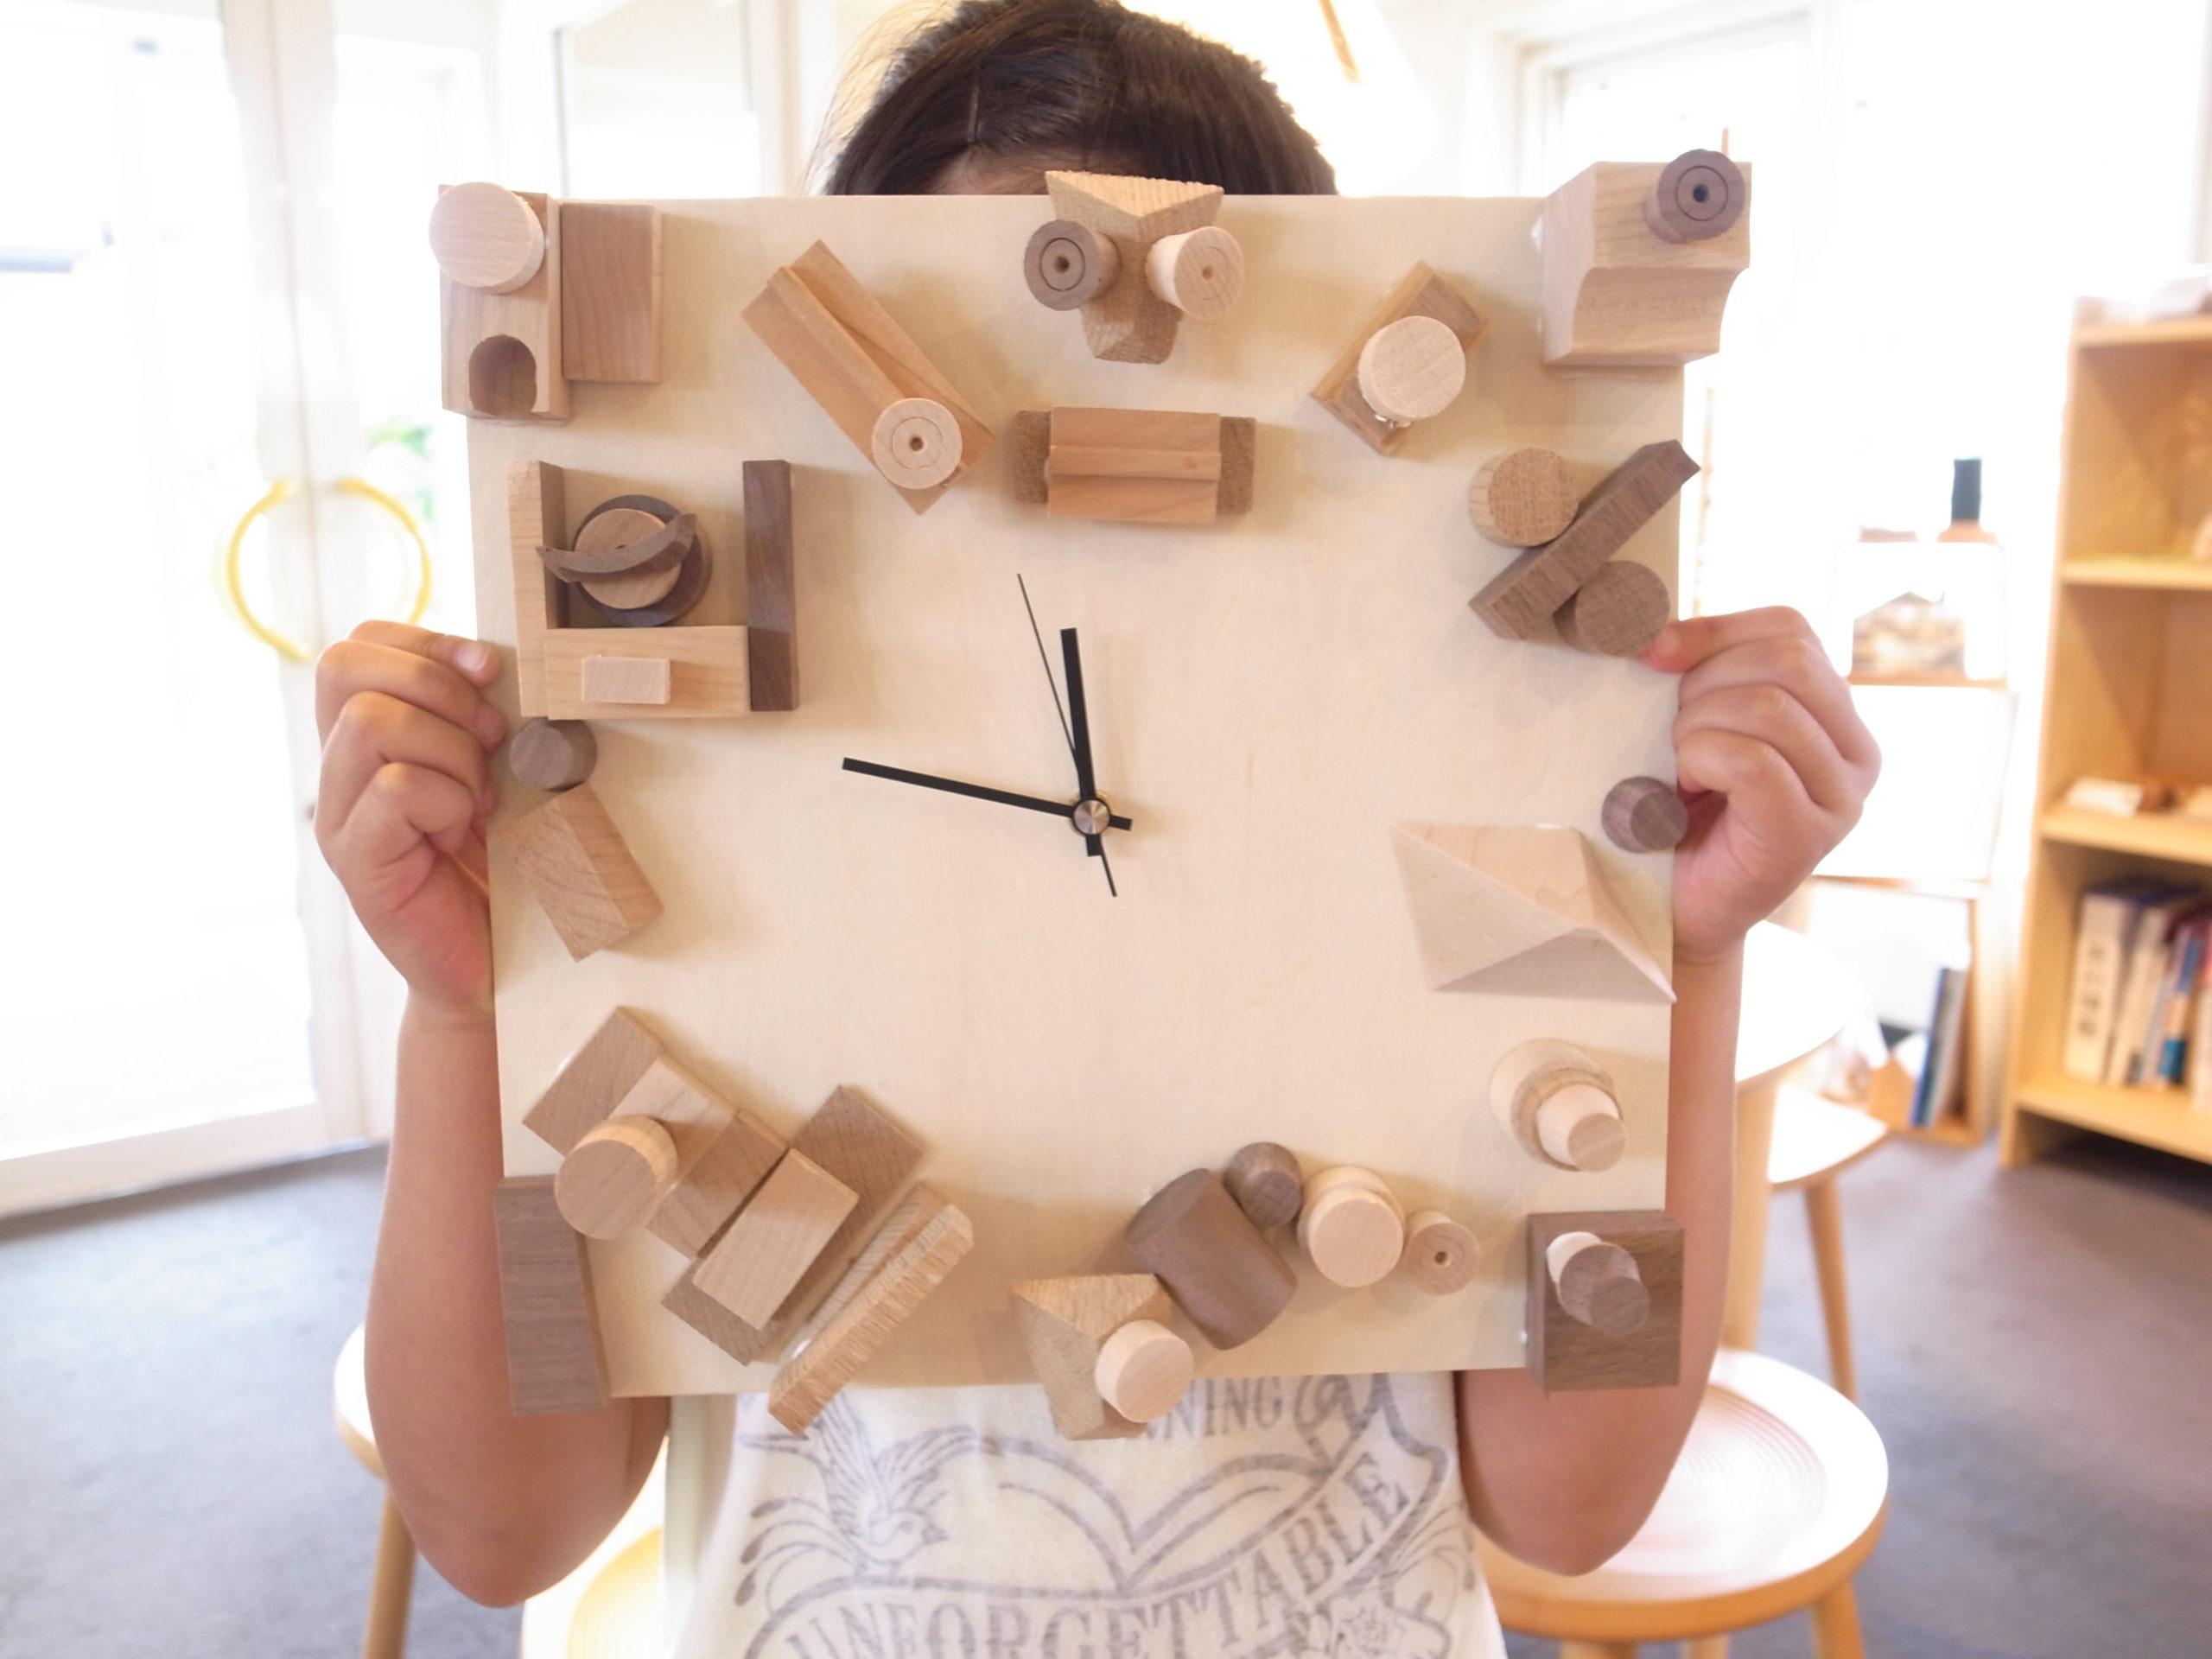 [コサイン青山]夏休みこっぱっぱ木工教室『壁掛け時計』づくりとファブリックパネルづくり